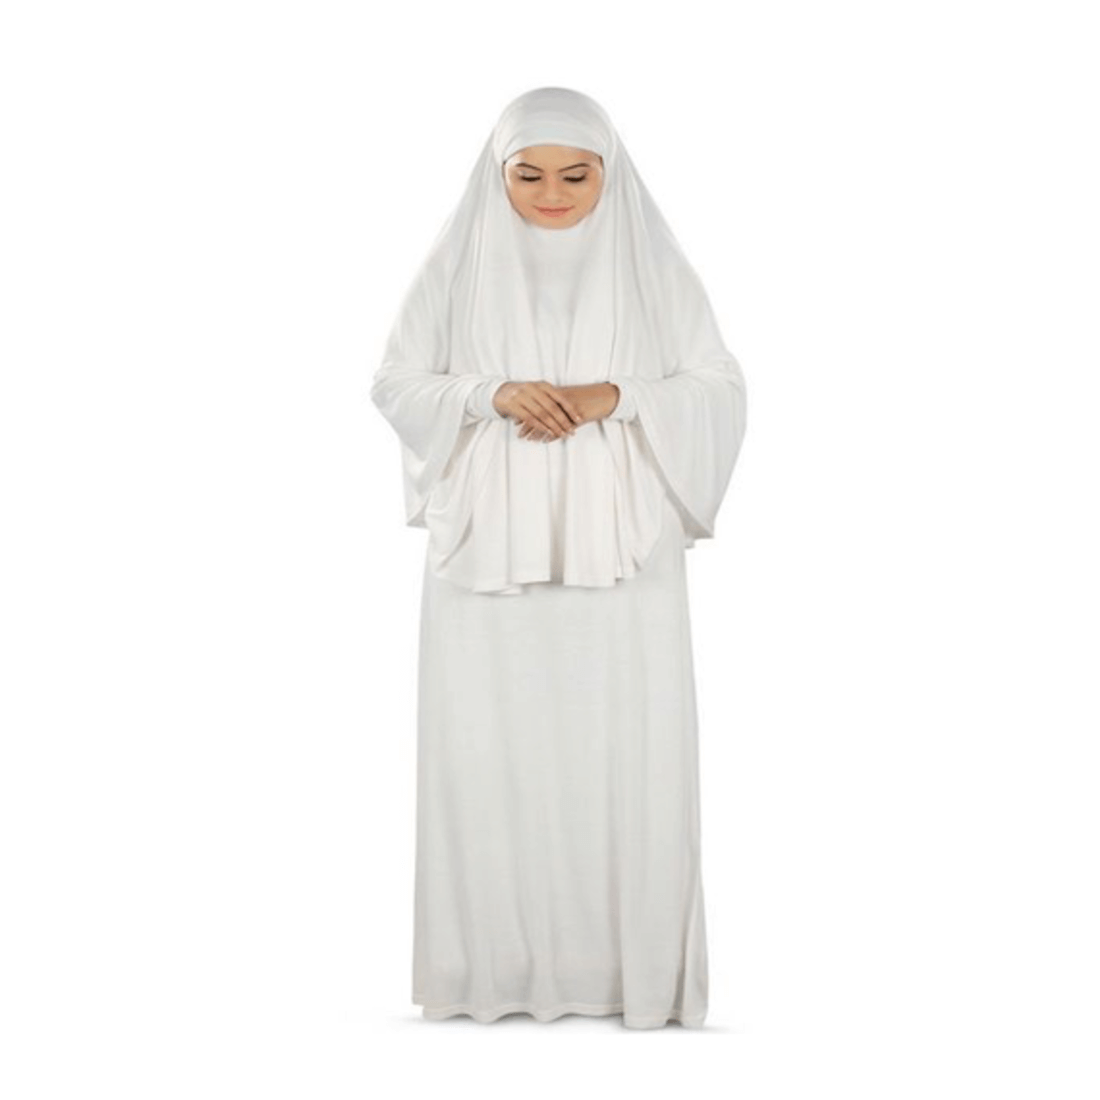 Woman wearing Ihram during pilgrimage